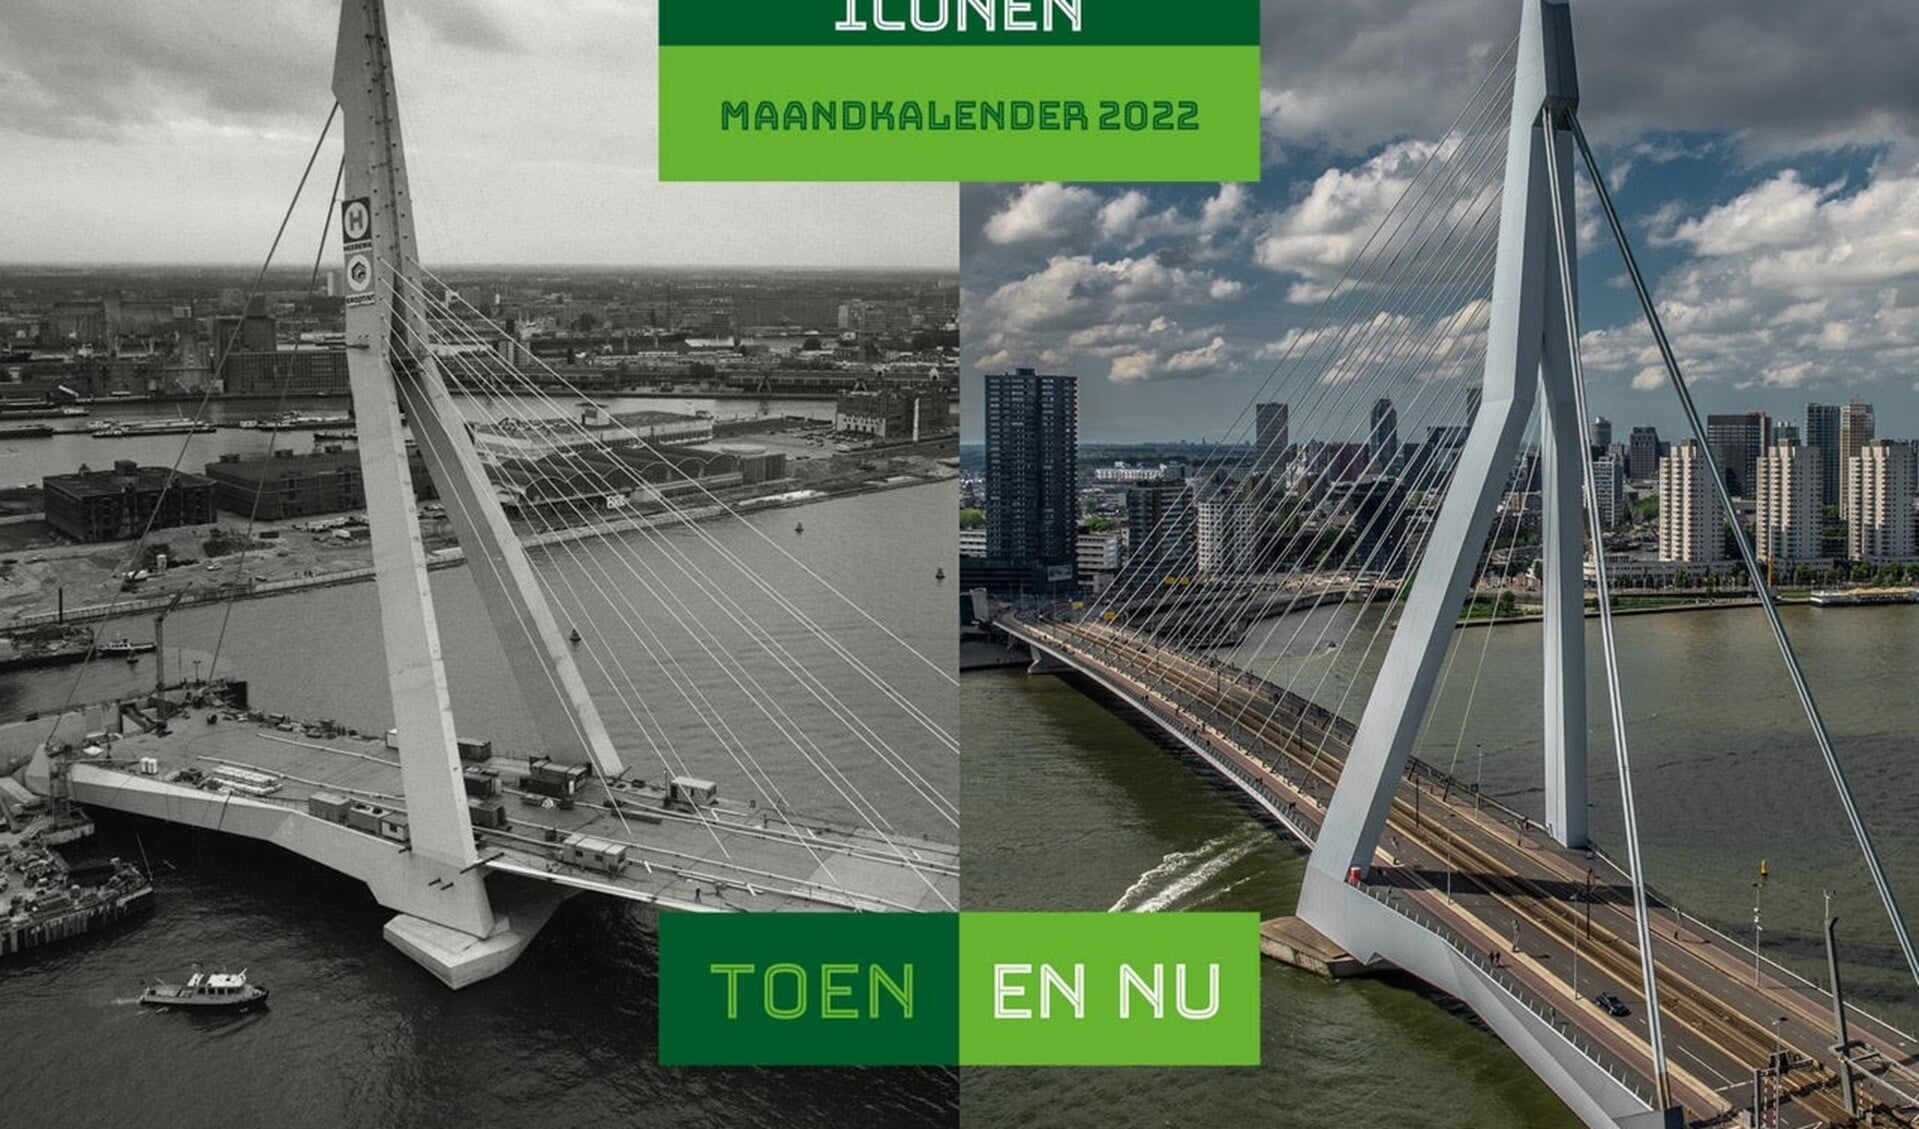 De Rotterdamse Iconen - toen en nu - Maandkalender 2022: een zeer fraaie uitgave.